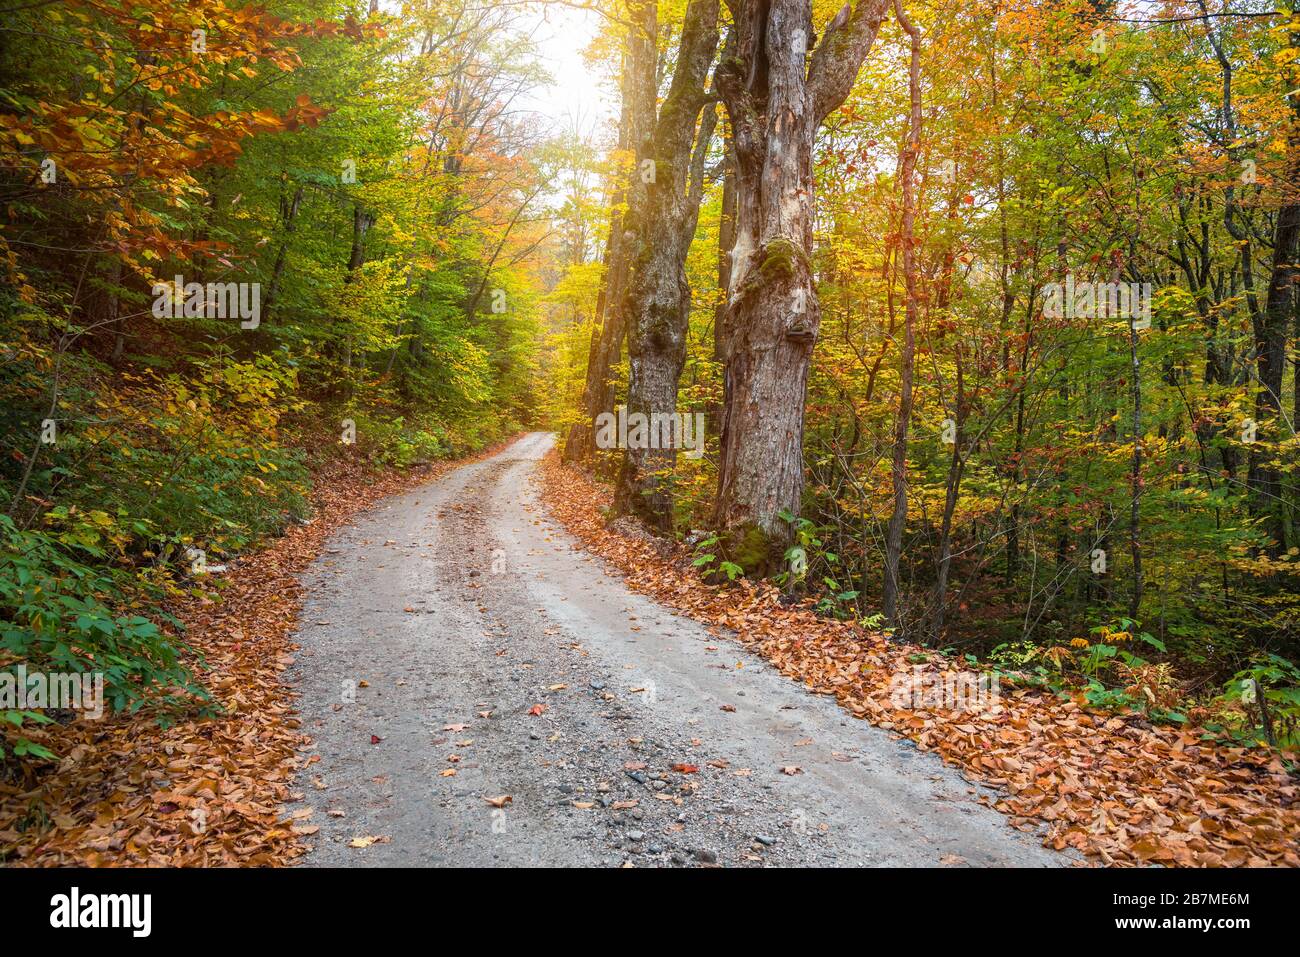 Route arrière déserte à travers une forêt de feuillus pendant la saison des couleurs d'automne Banque D'Images